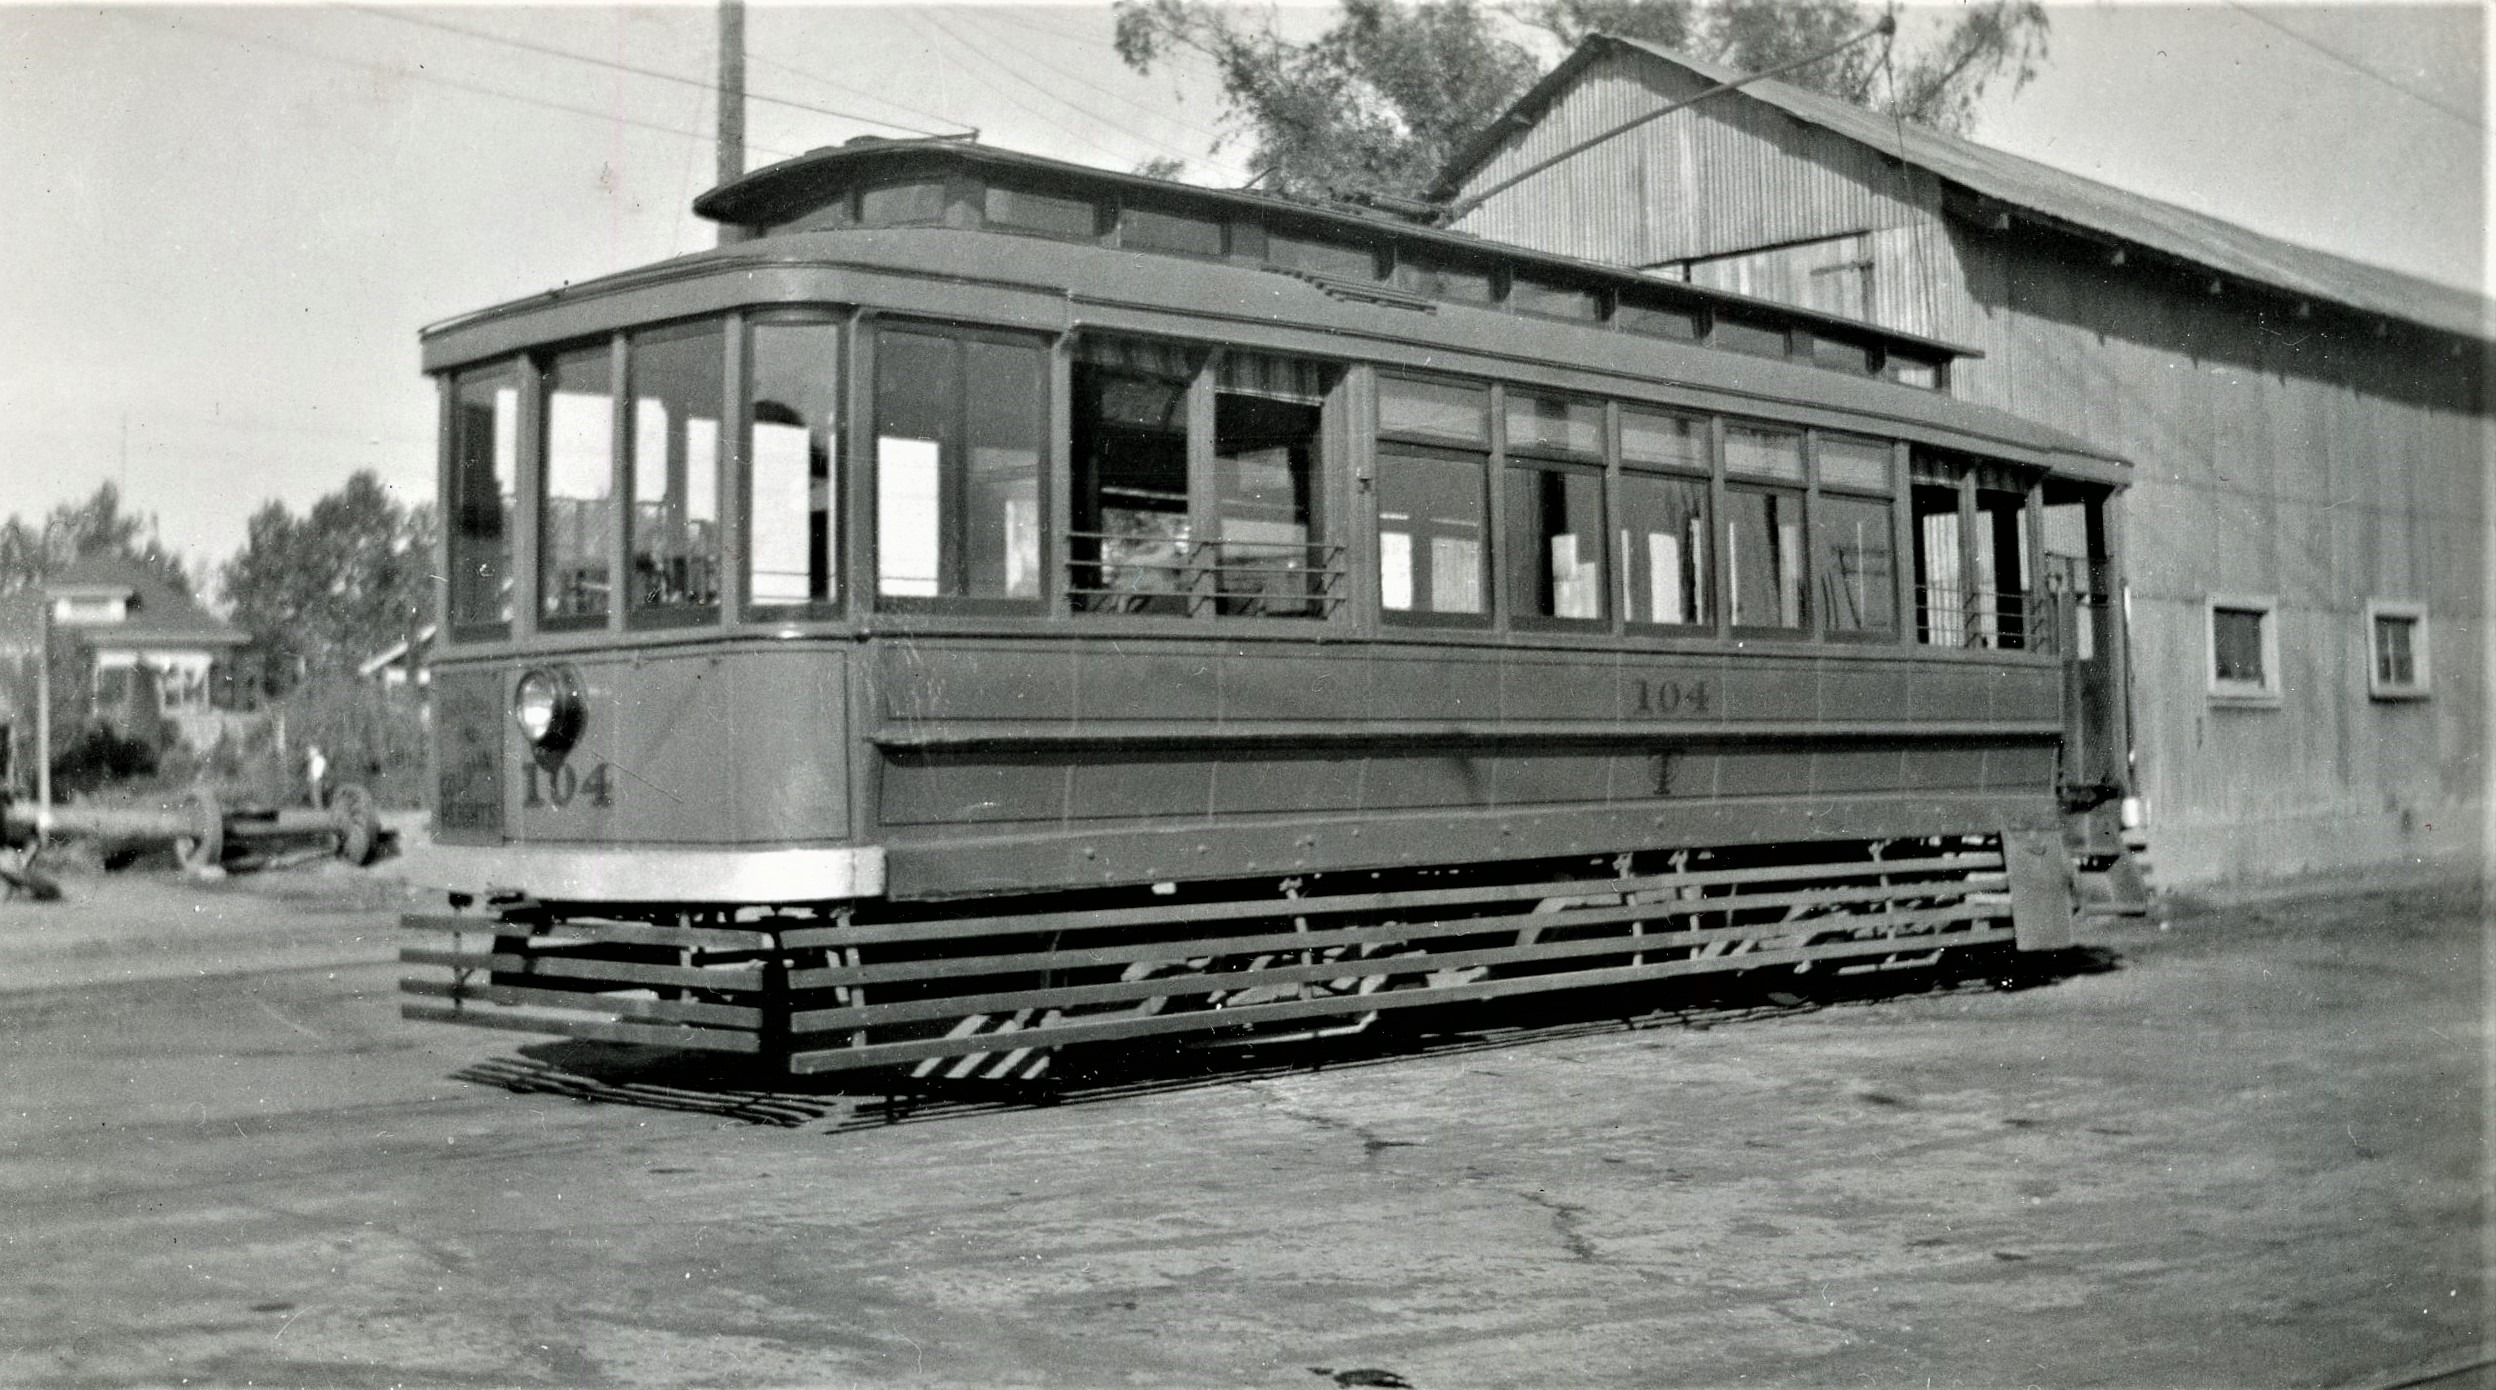 Central California Traction Company | Sacramento, California | St. Louis Car #104 | October 1, 1938 | unknown photographer | Elmer Kremkow Collection